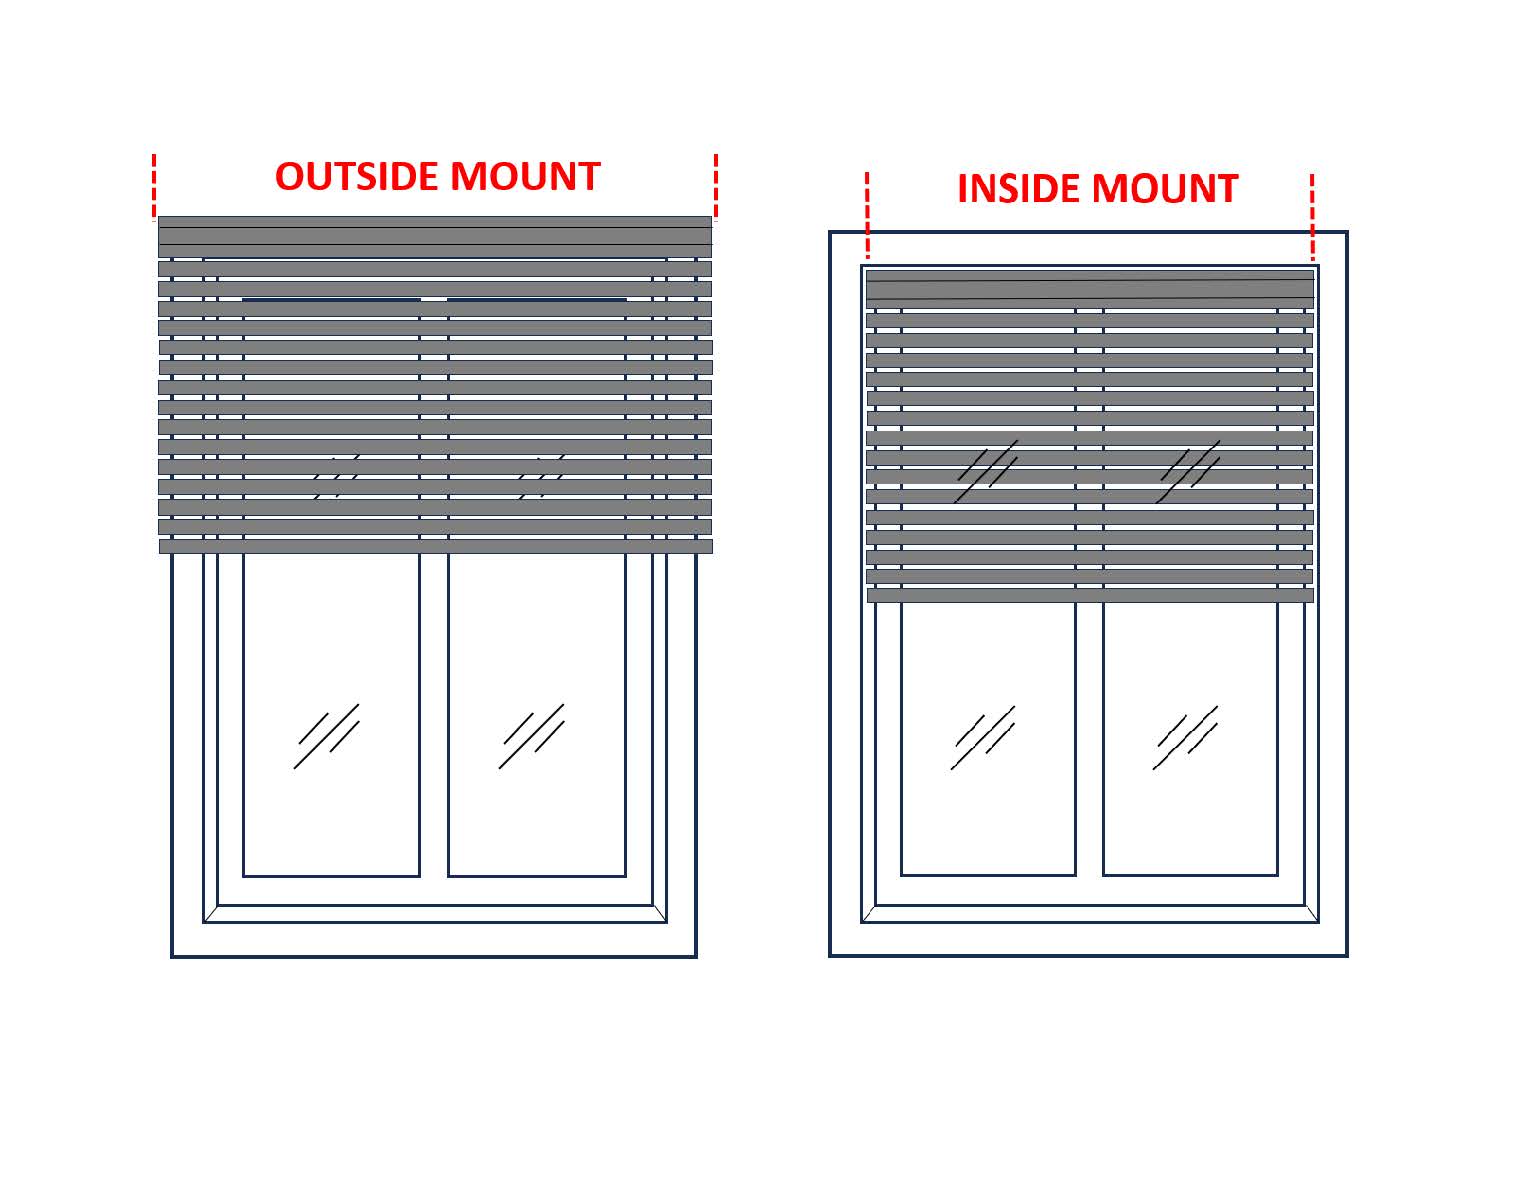 Inside vs outside mount